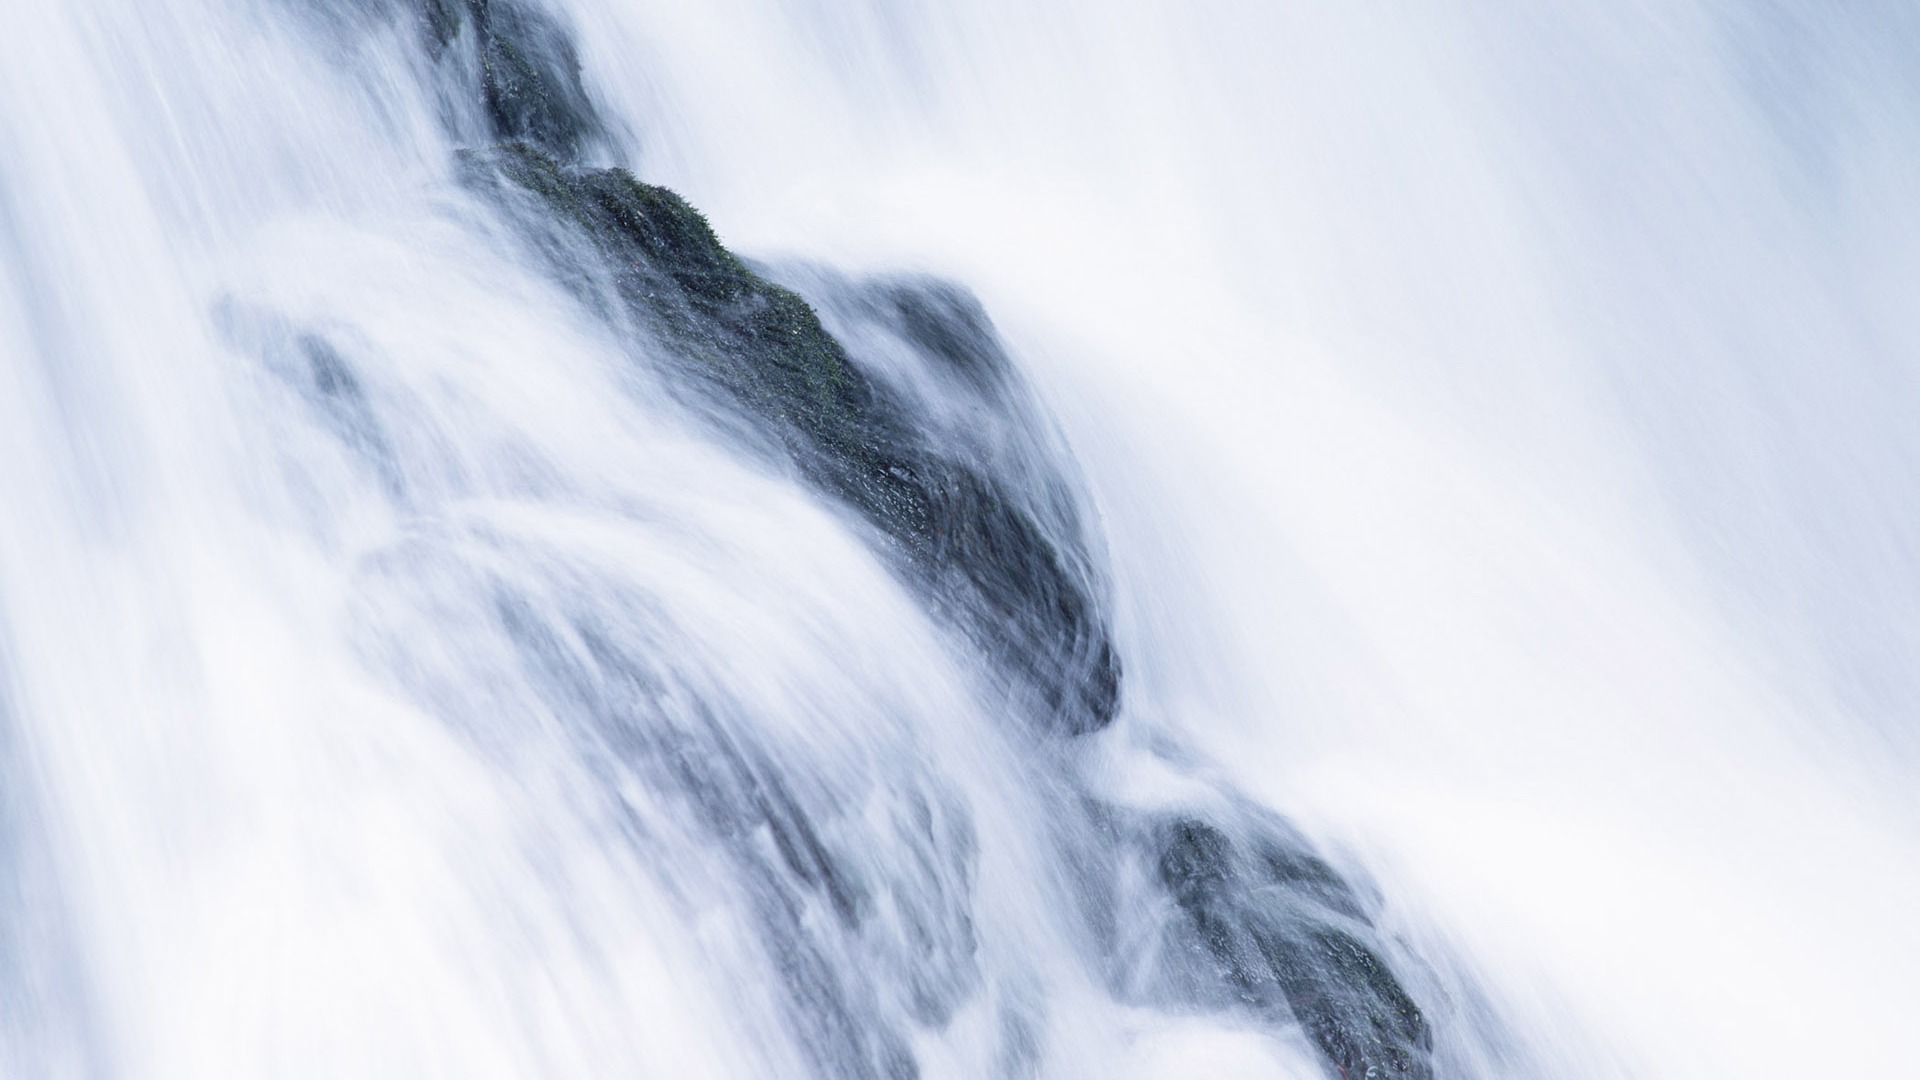 Waterfall flux HD Wallpapers #32 - 1920x1080